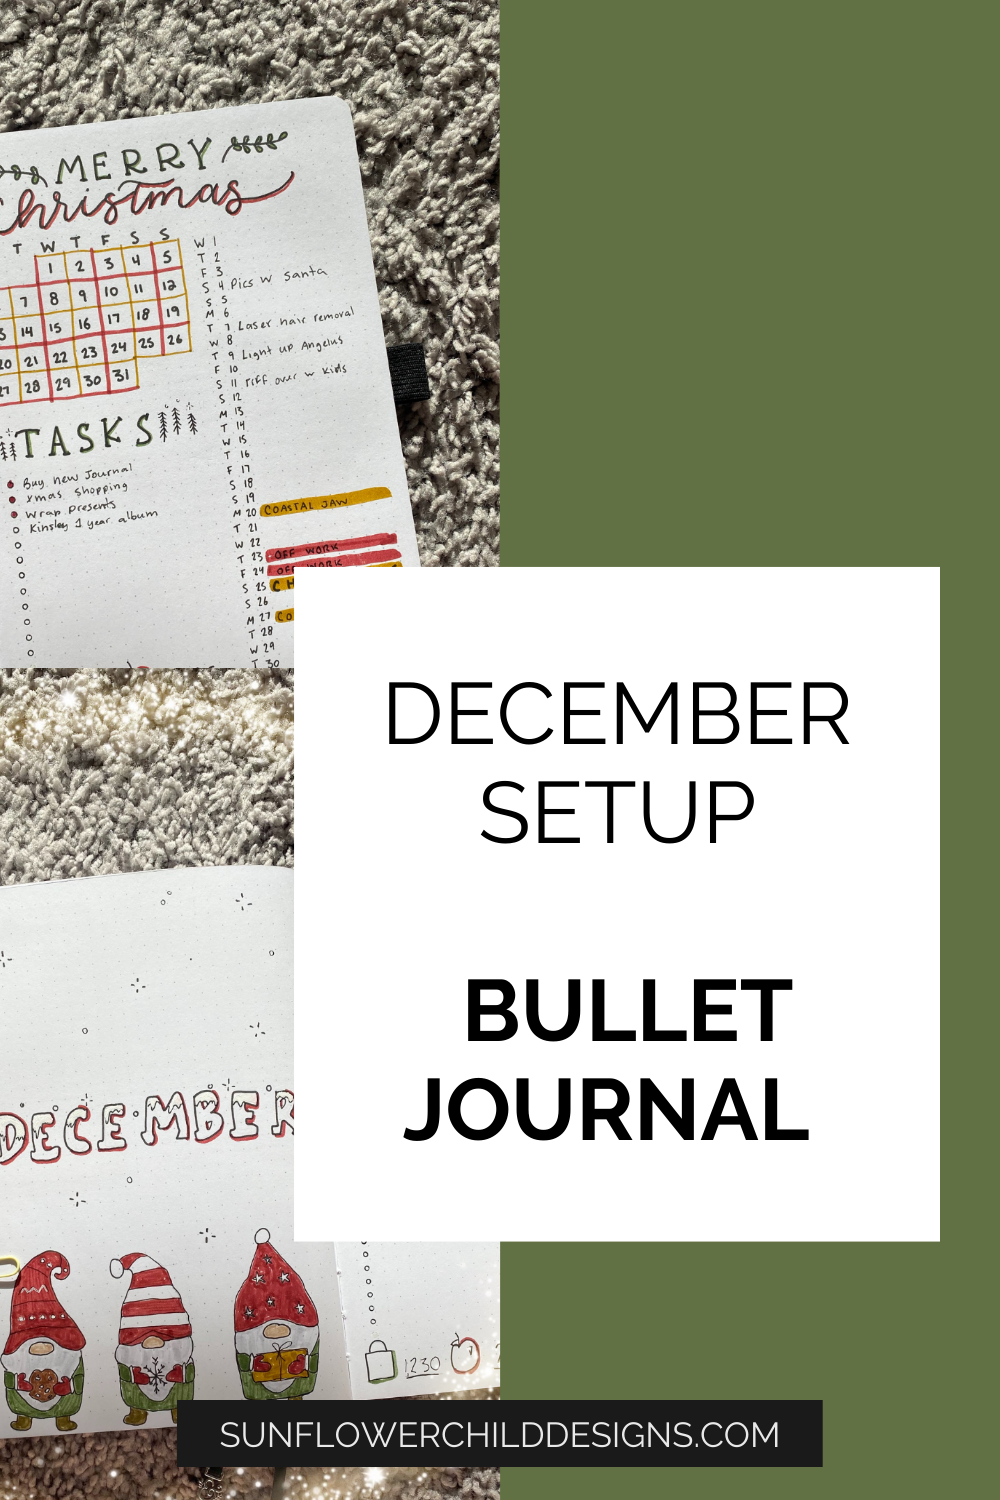 December-bullet-journal-ideas-11.png